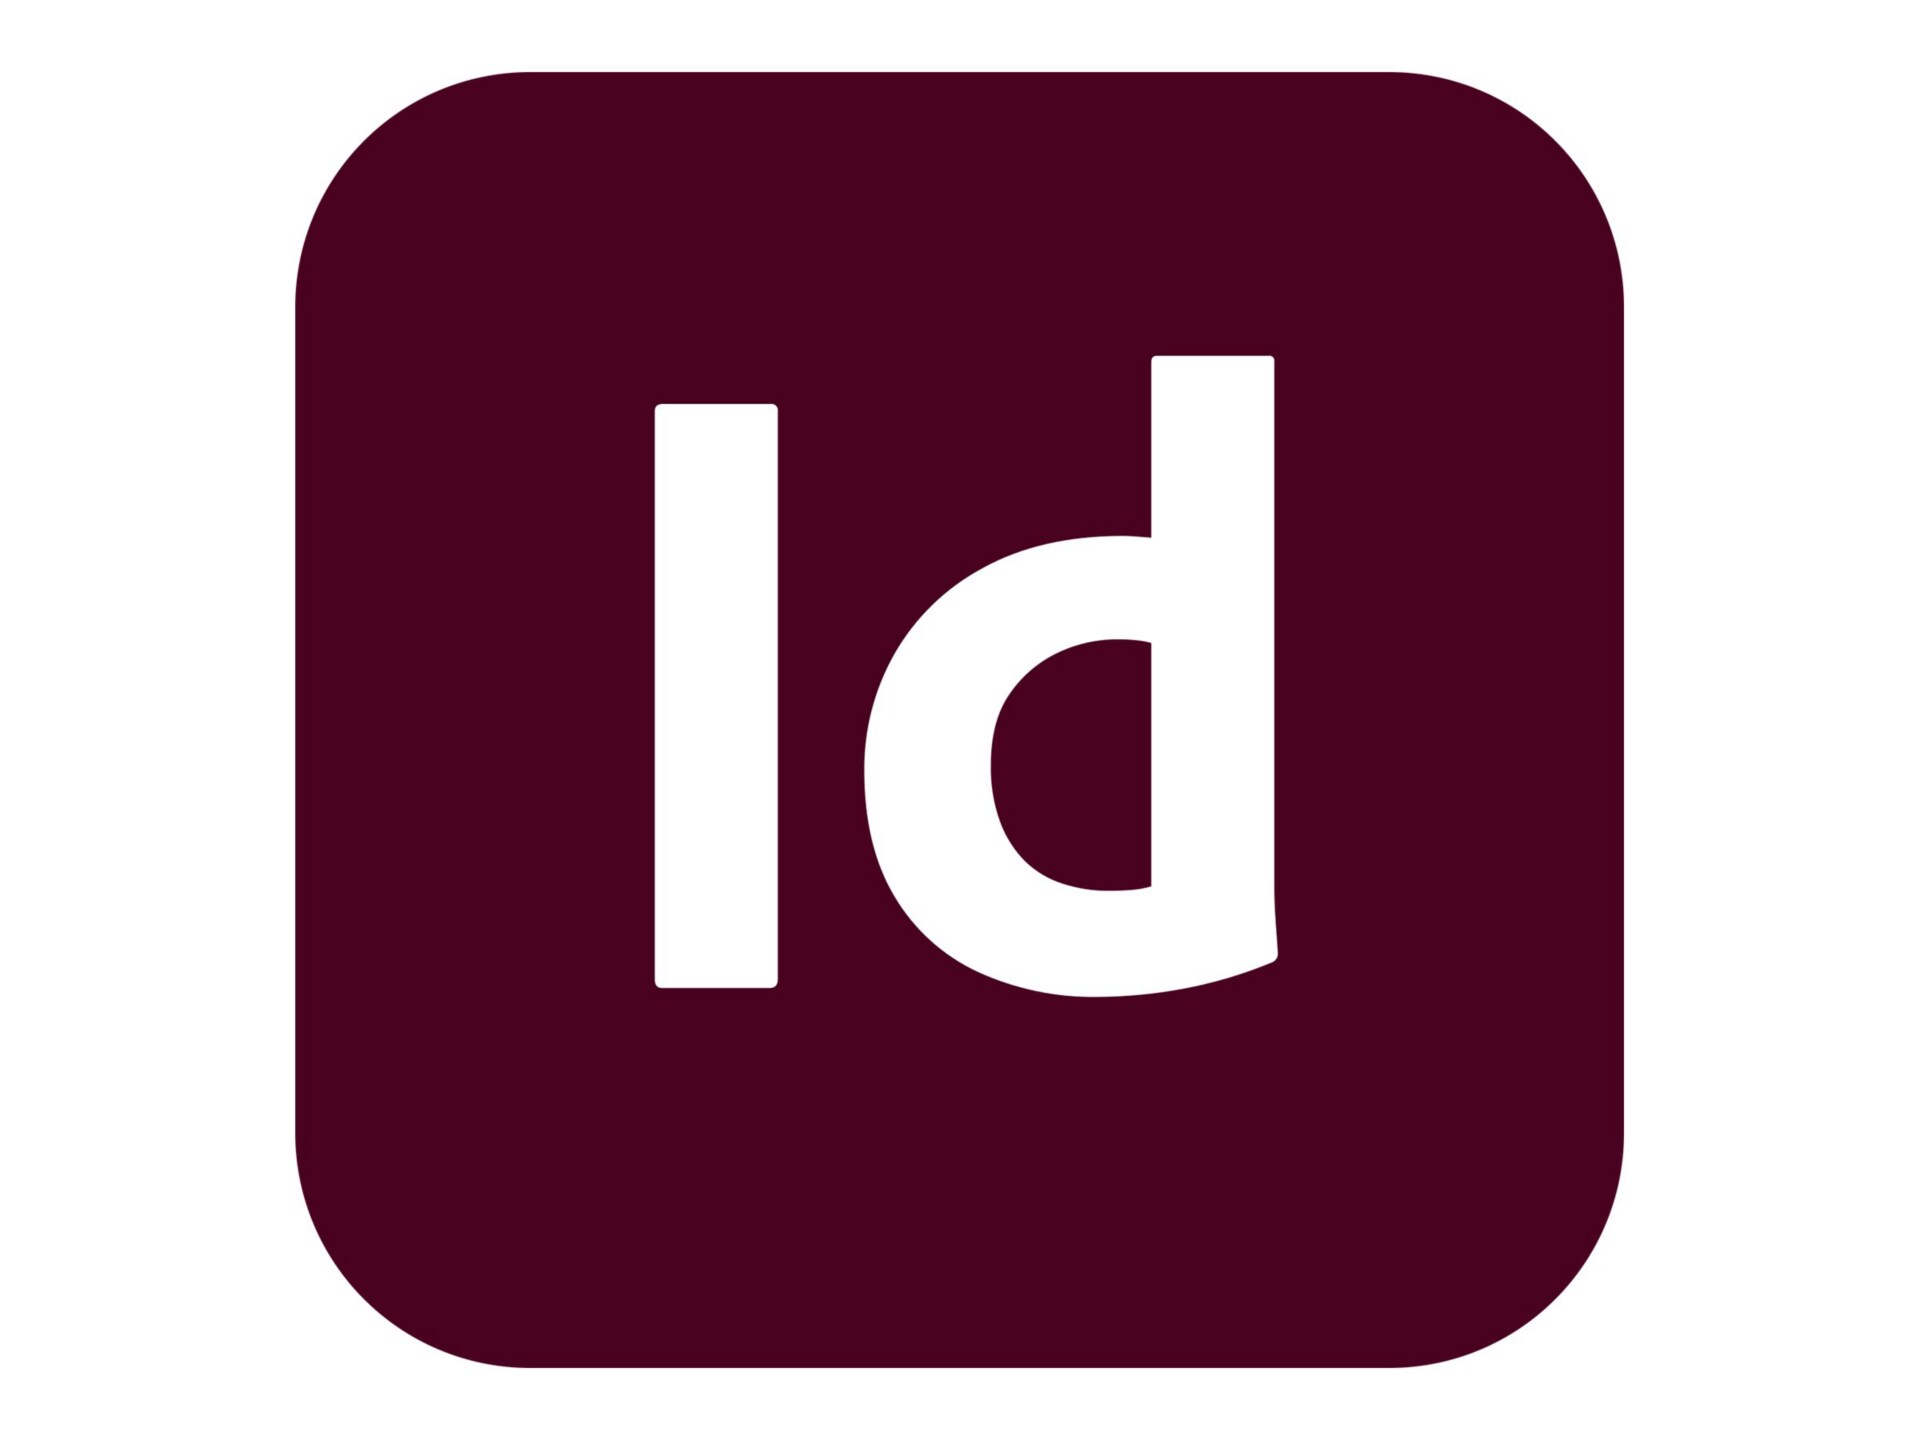 Adobe InDesign Server Premium for Enterprise - Subscription New (7 months) - 1 server